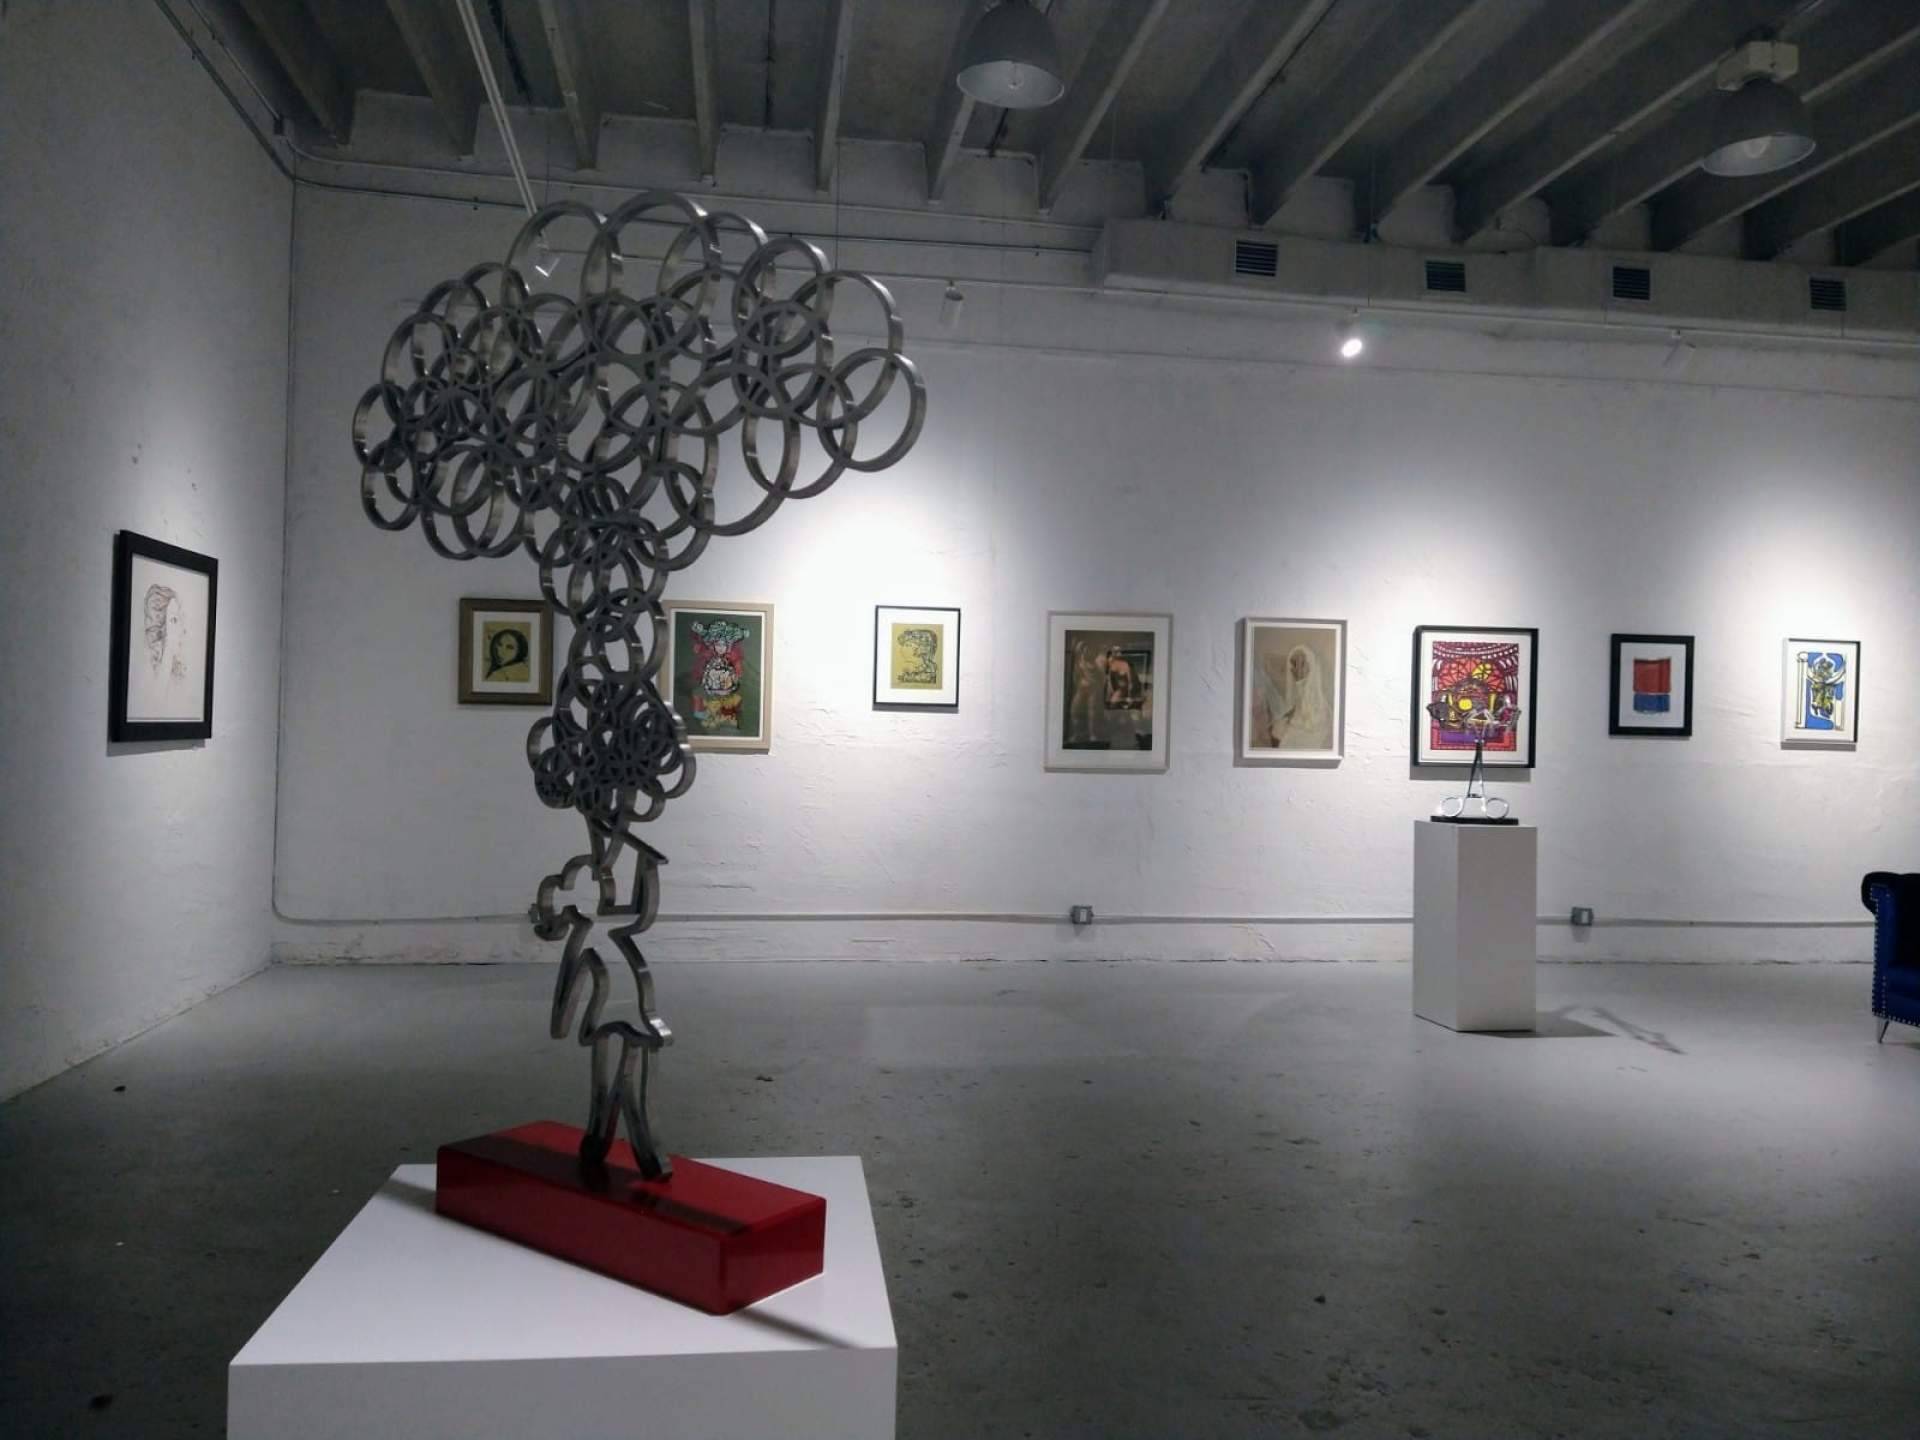 El ‘Espíritu’ del arte cubano se exhibe en Miami